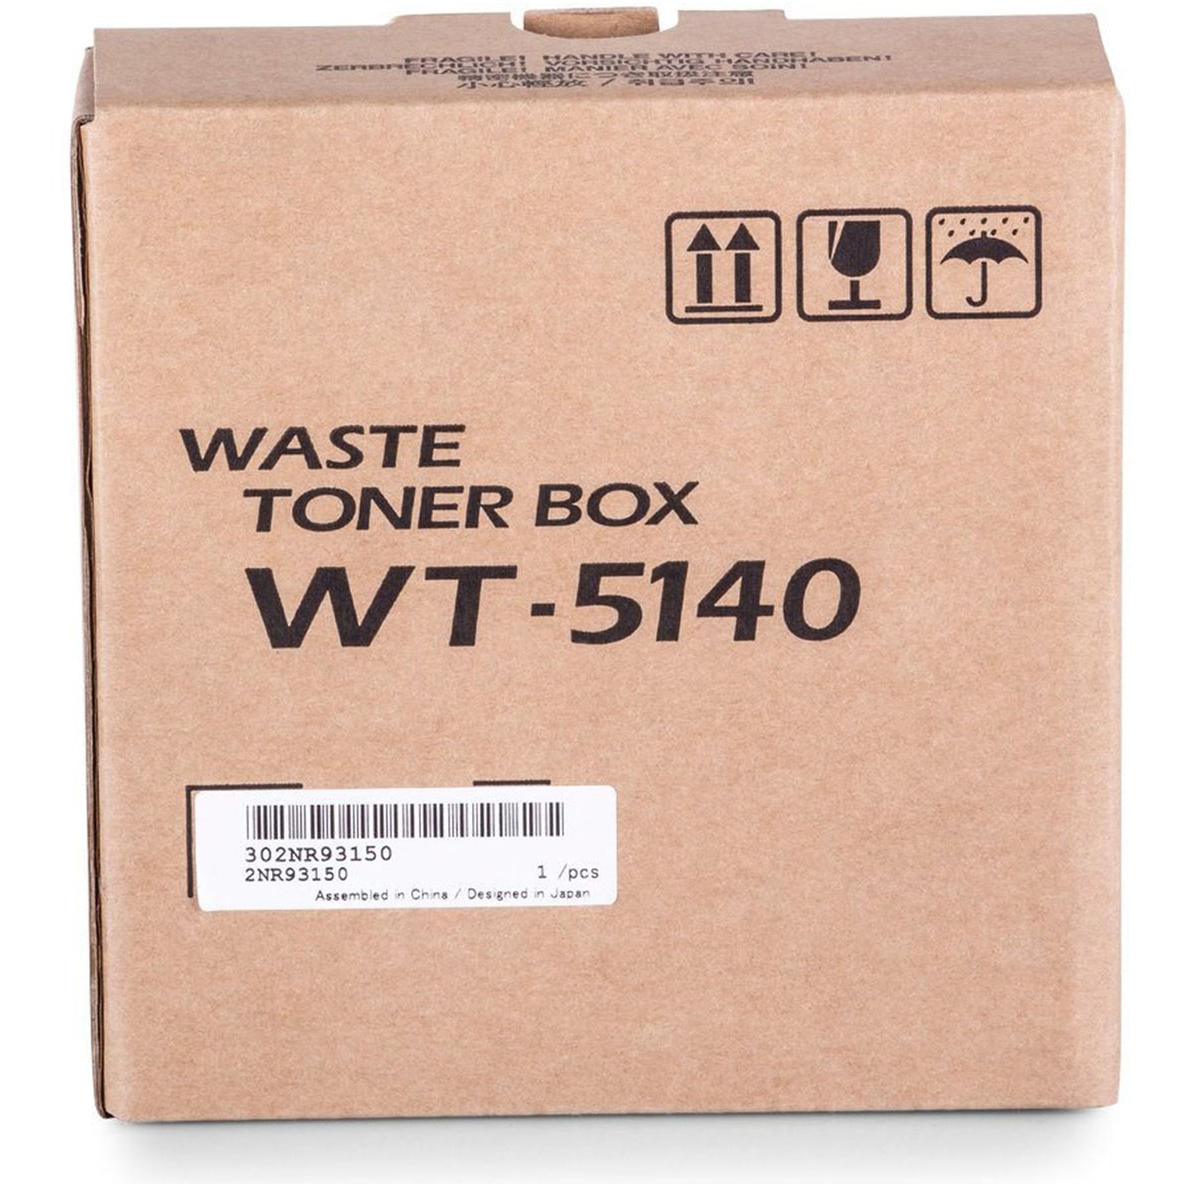 Original Kyocera WT-5140 Waste Toner Box (302NR93151)